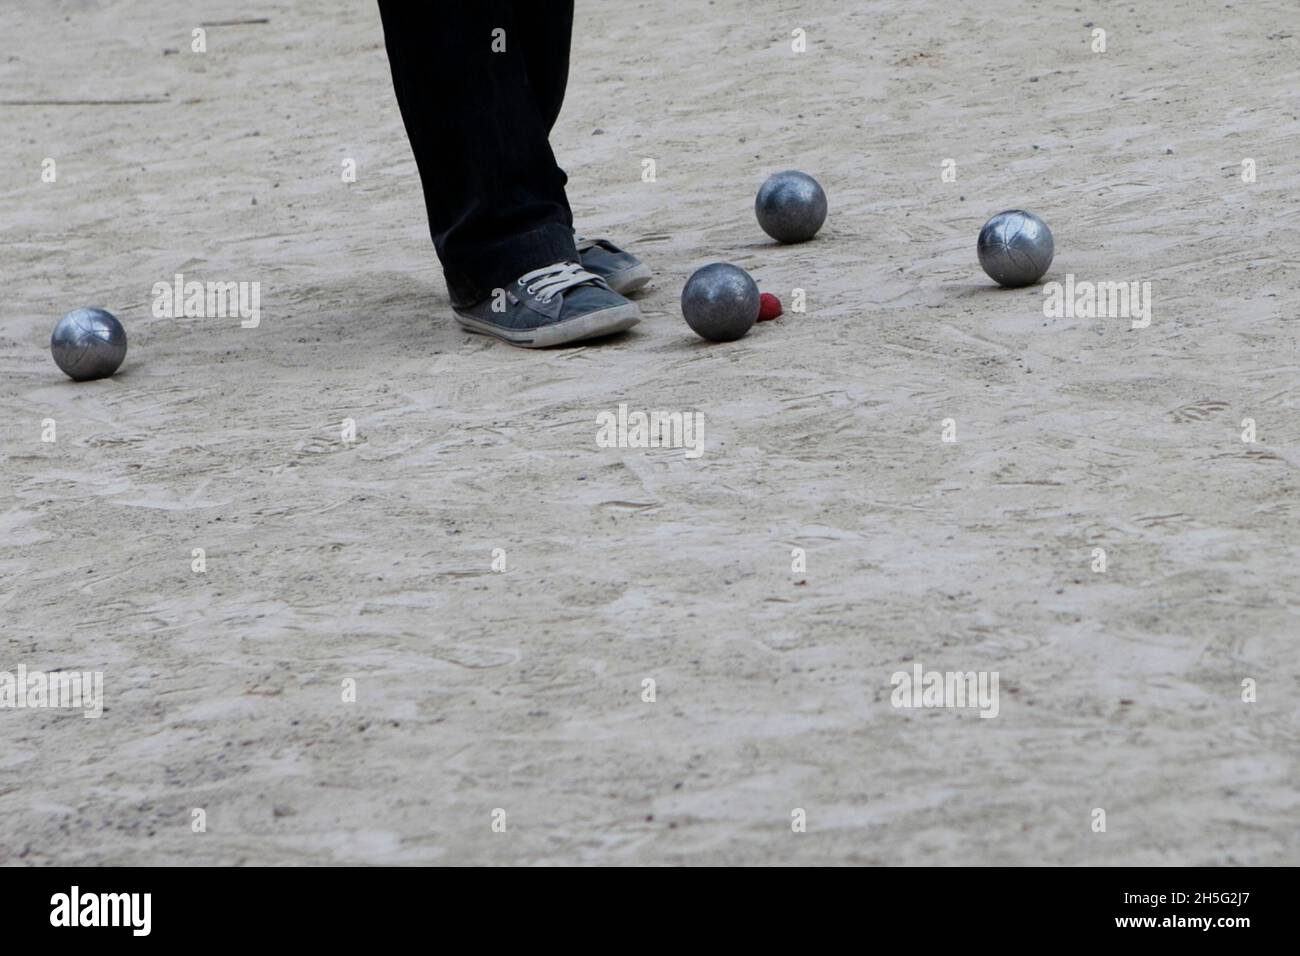 Ein Franzose, der gerade -auf einem öffentlichen Platz- Boule spielt. Keine Erkennbarkeit, da nur Bein. Cannes, Frankreich. Stock Photo